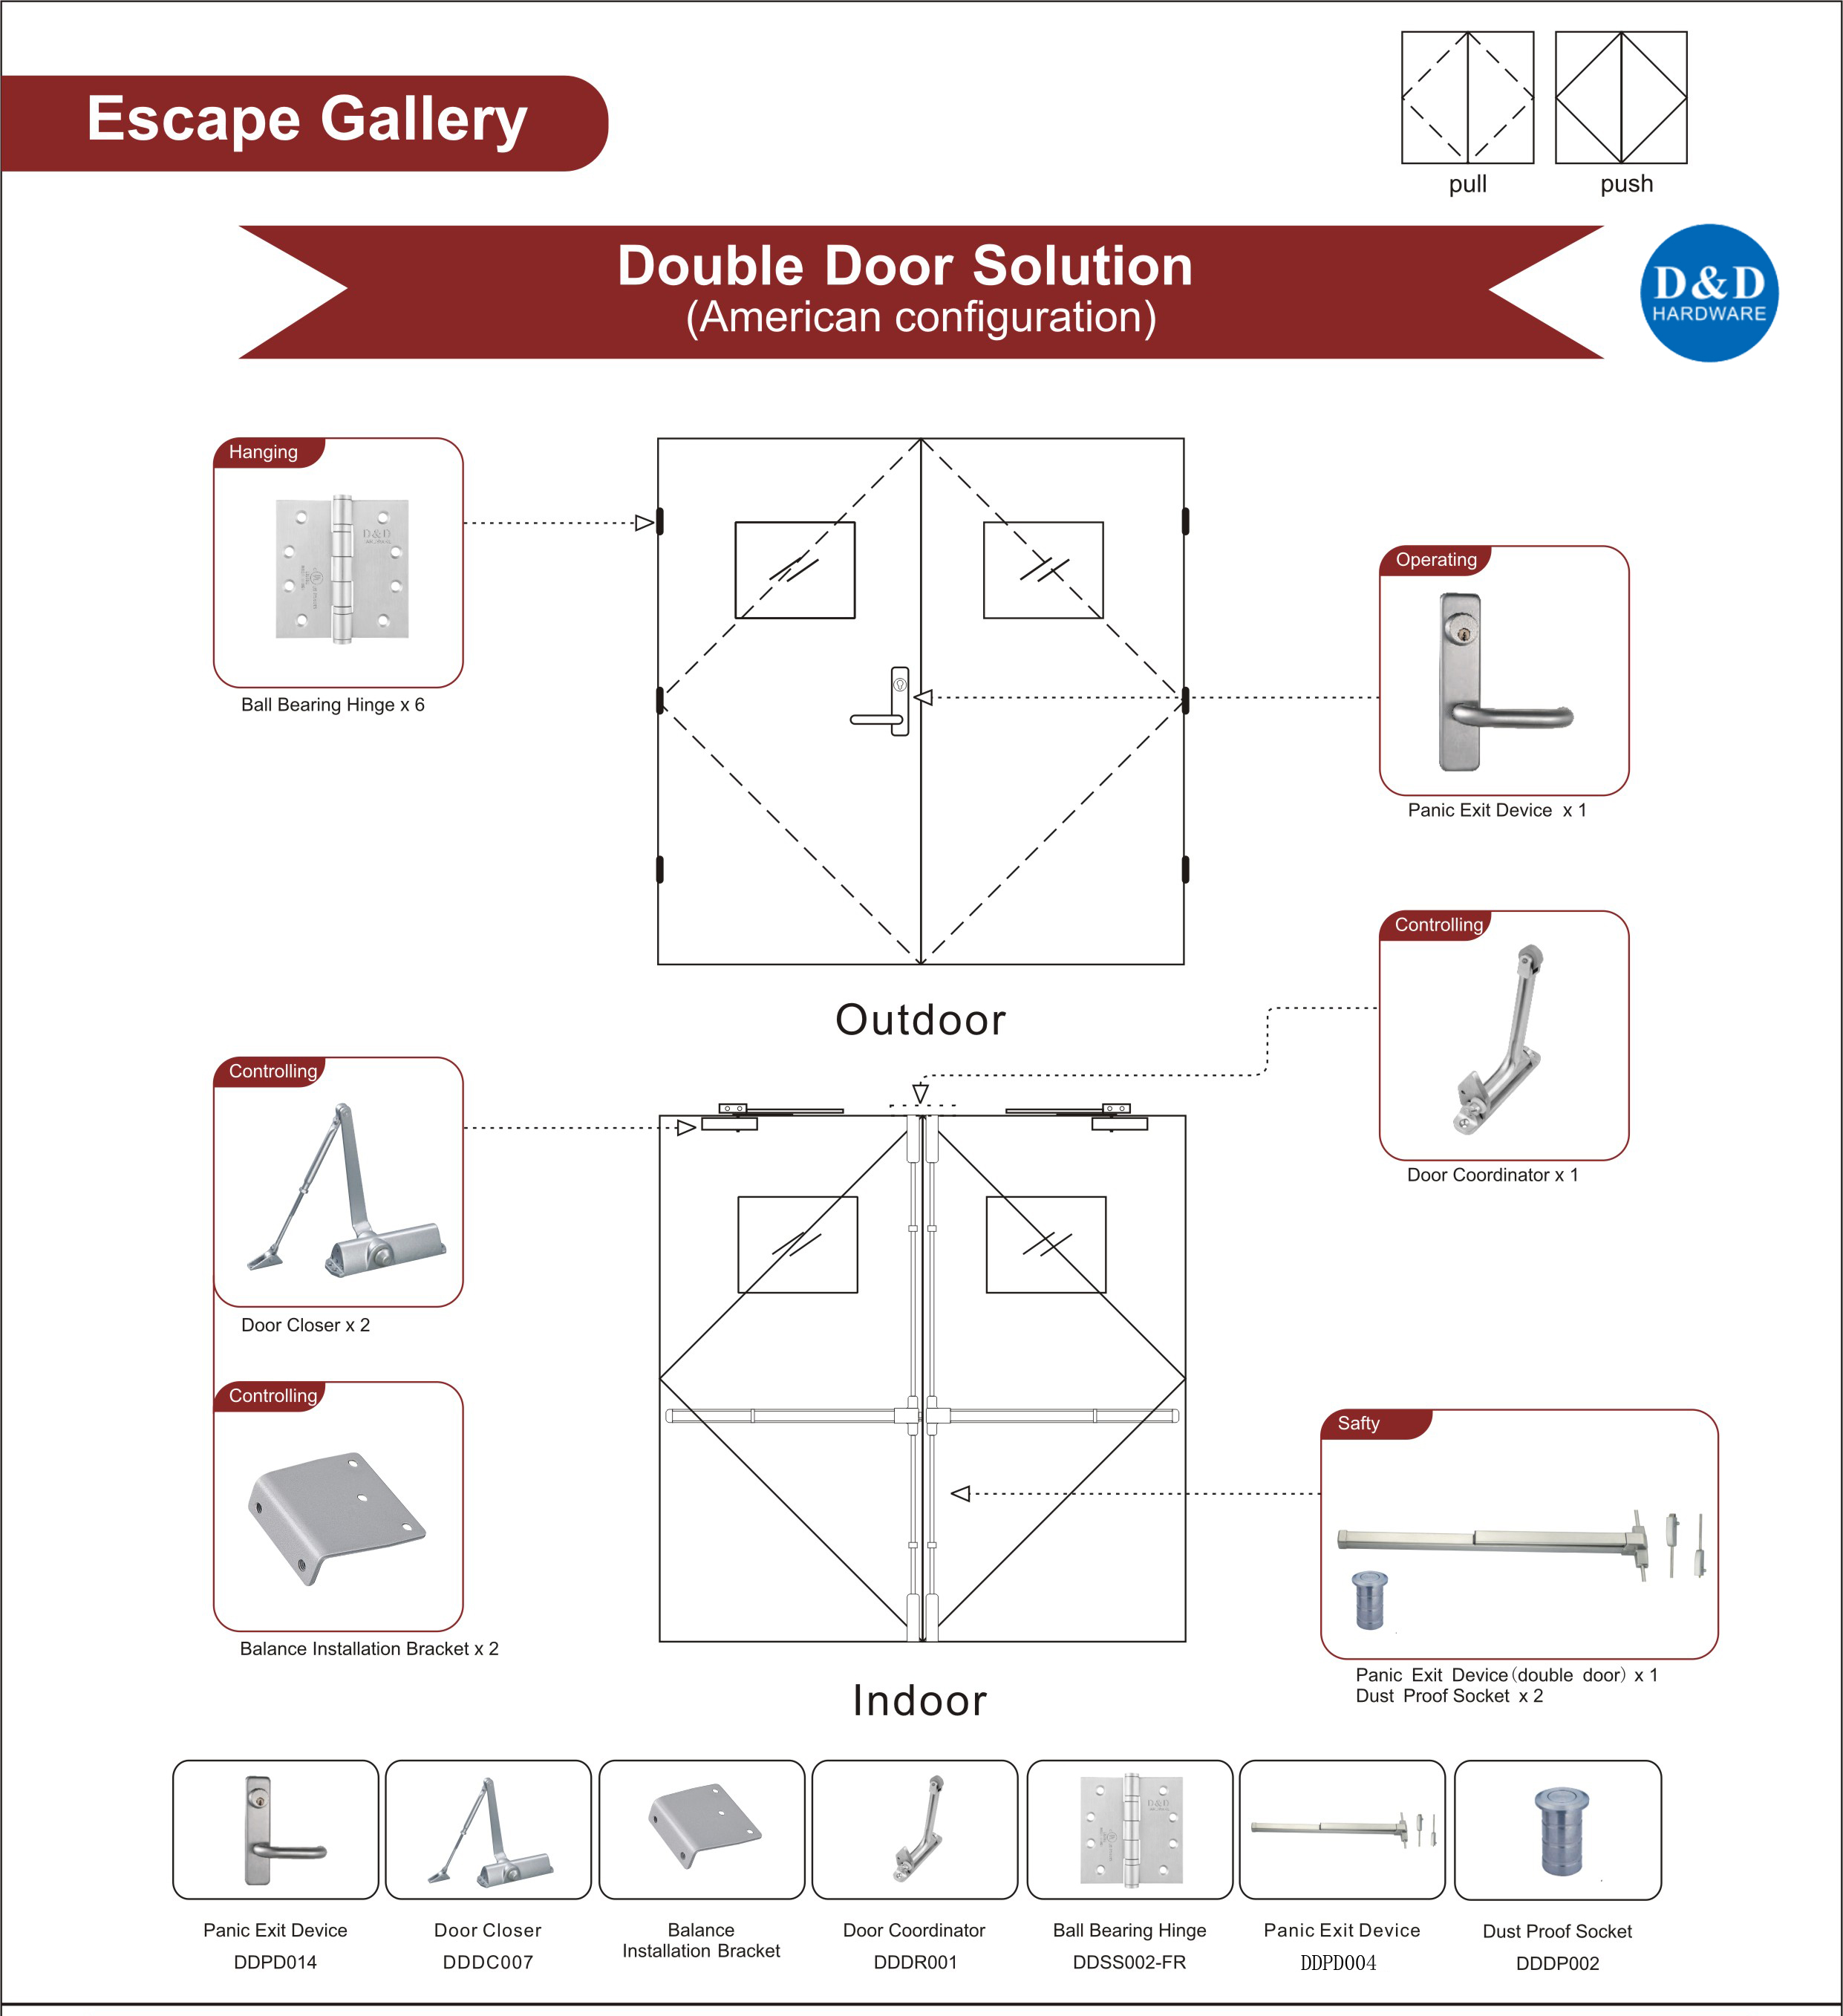 Wooden Escape Gallery Door Solution-D&D Hardware 